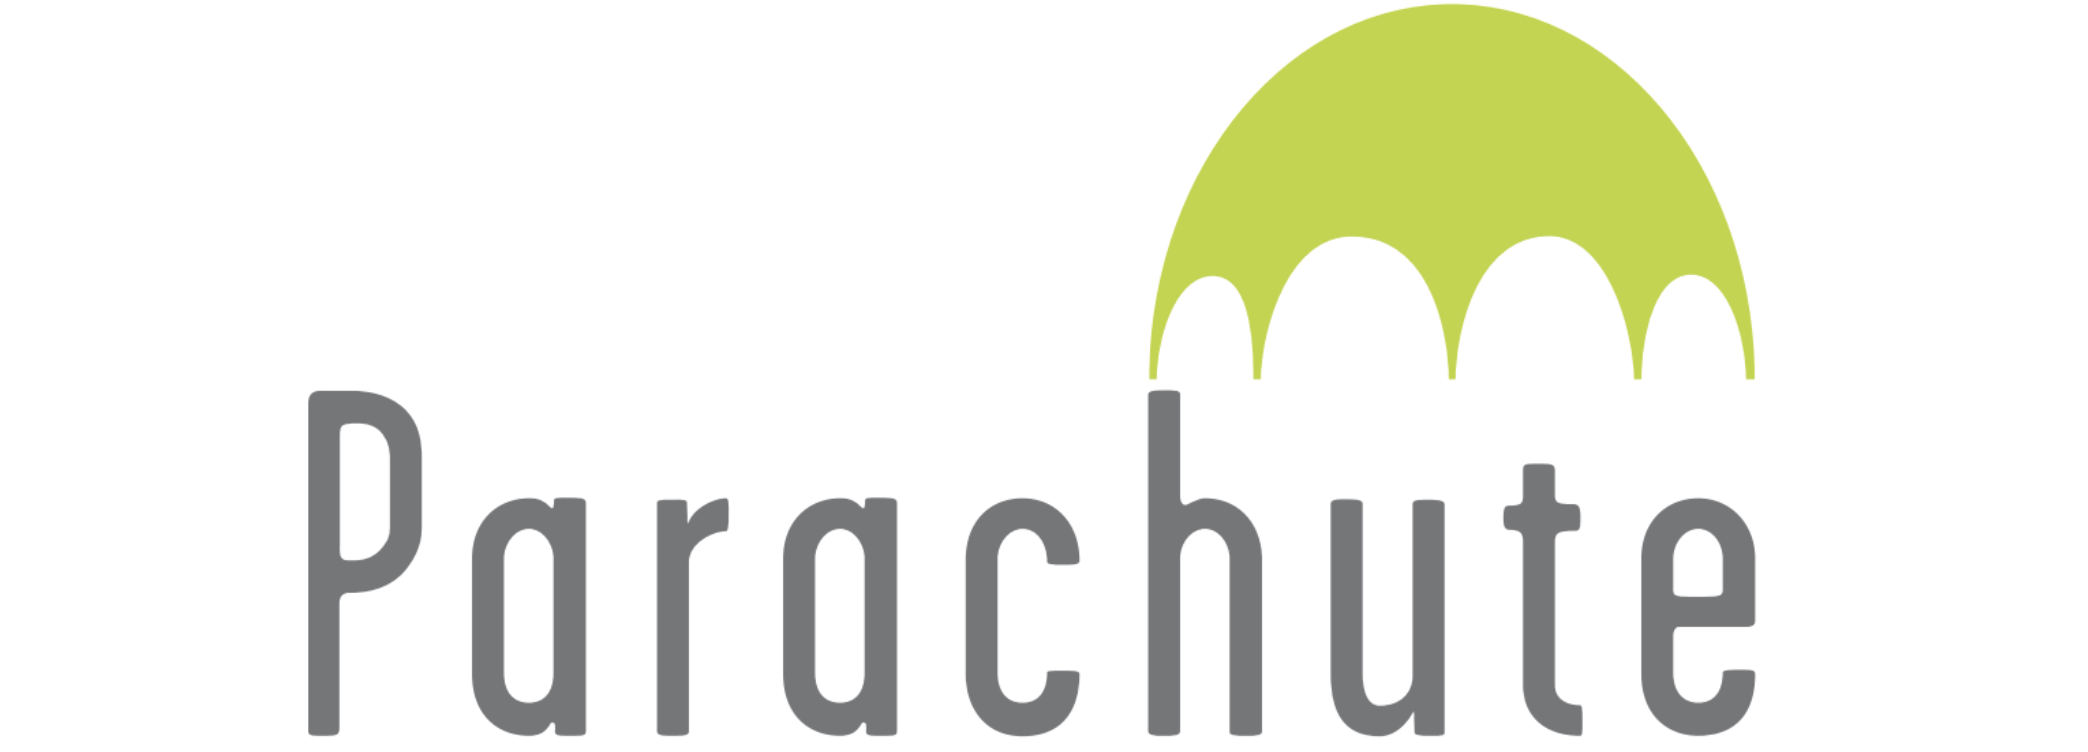 Parachute-Logo_ALT2.png